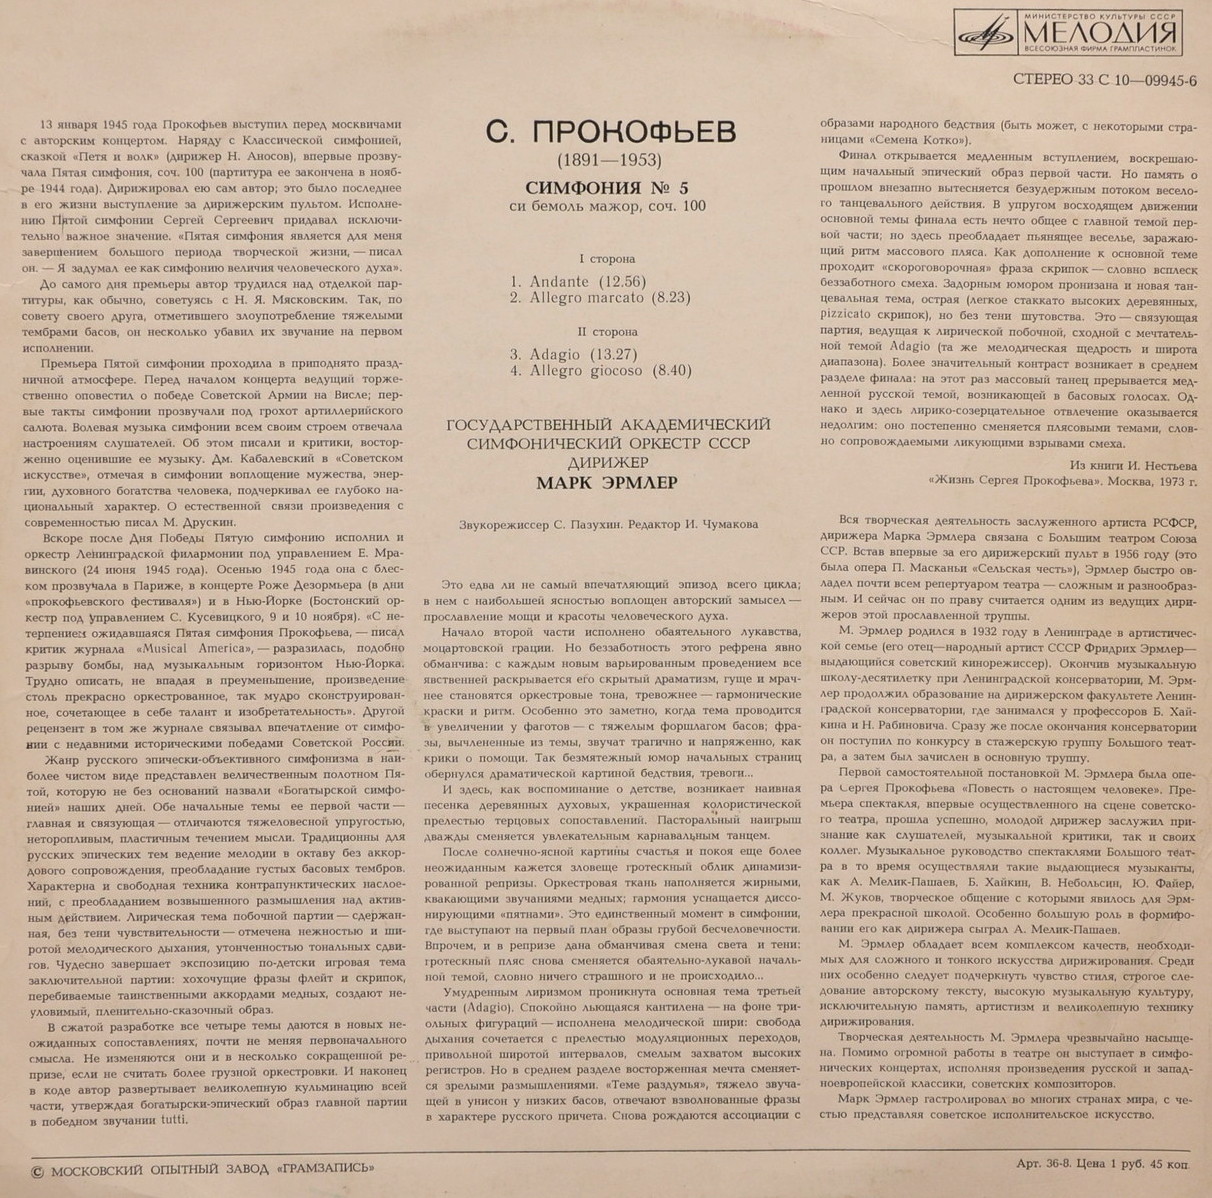 С. ПРОКОФЬЕВ (1891-1963): Симфония № 5 Си бемоль мажор, соч. 100.